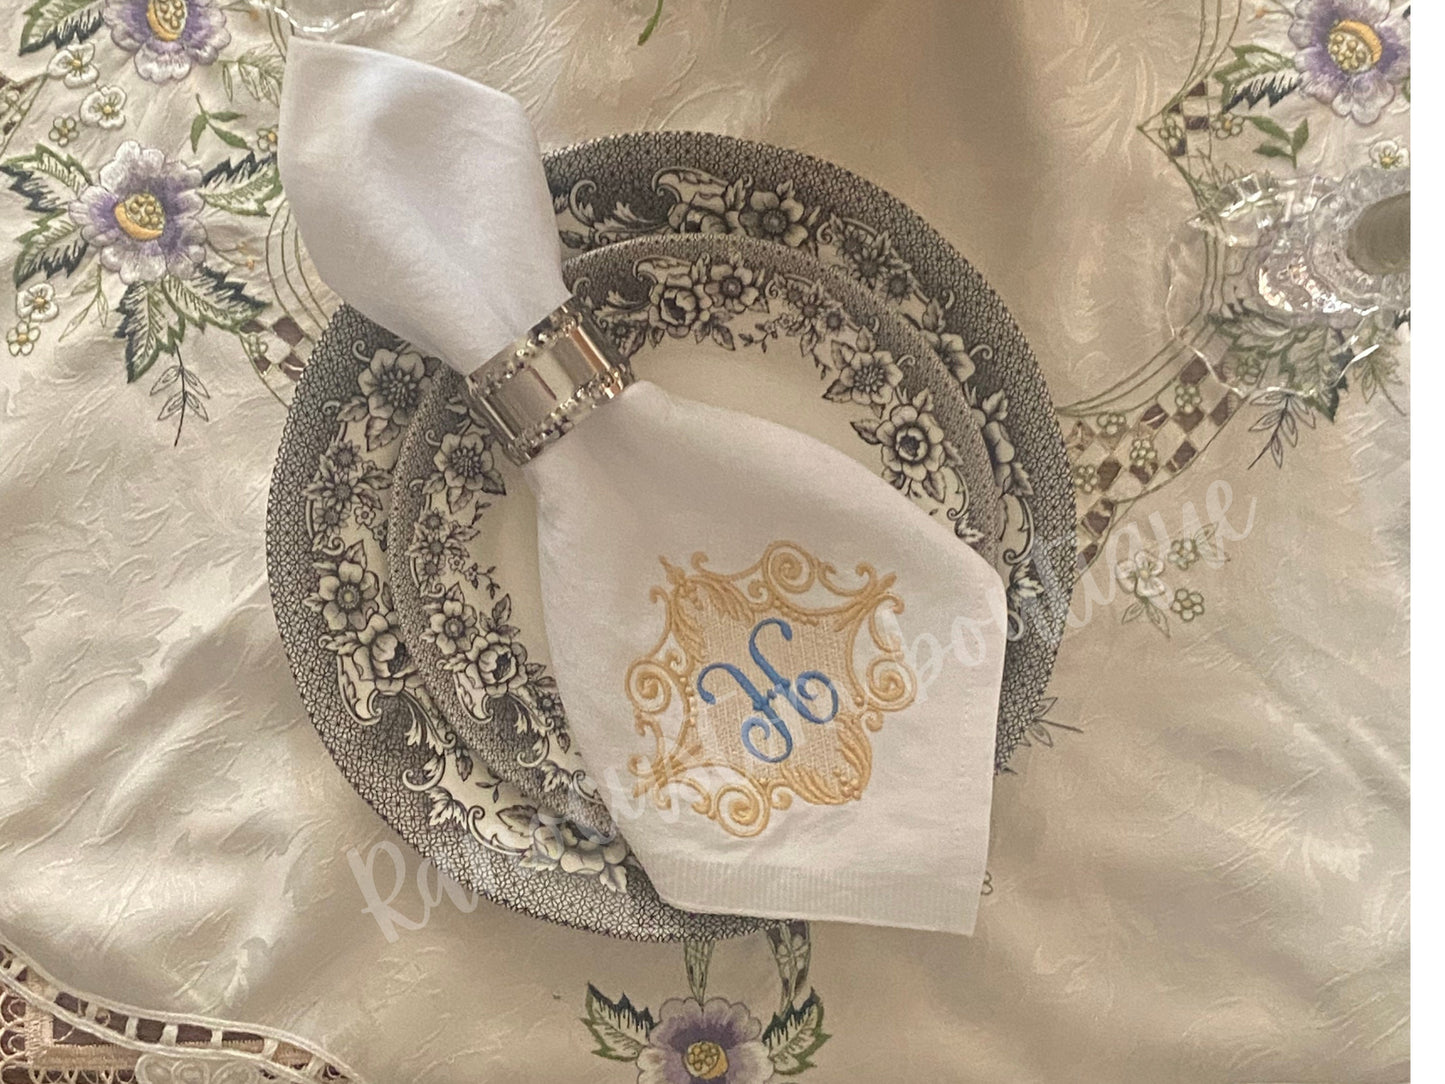 Elegant Bespoke Embroidered Napkin, Dinner Cotton Napkin, Custom Cotton Embroidered Napkin, Personalised Luxury Napkin